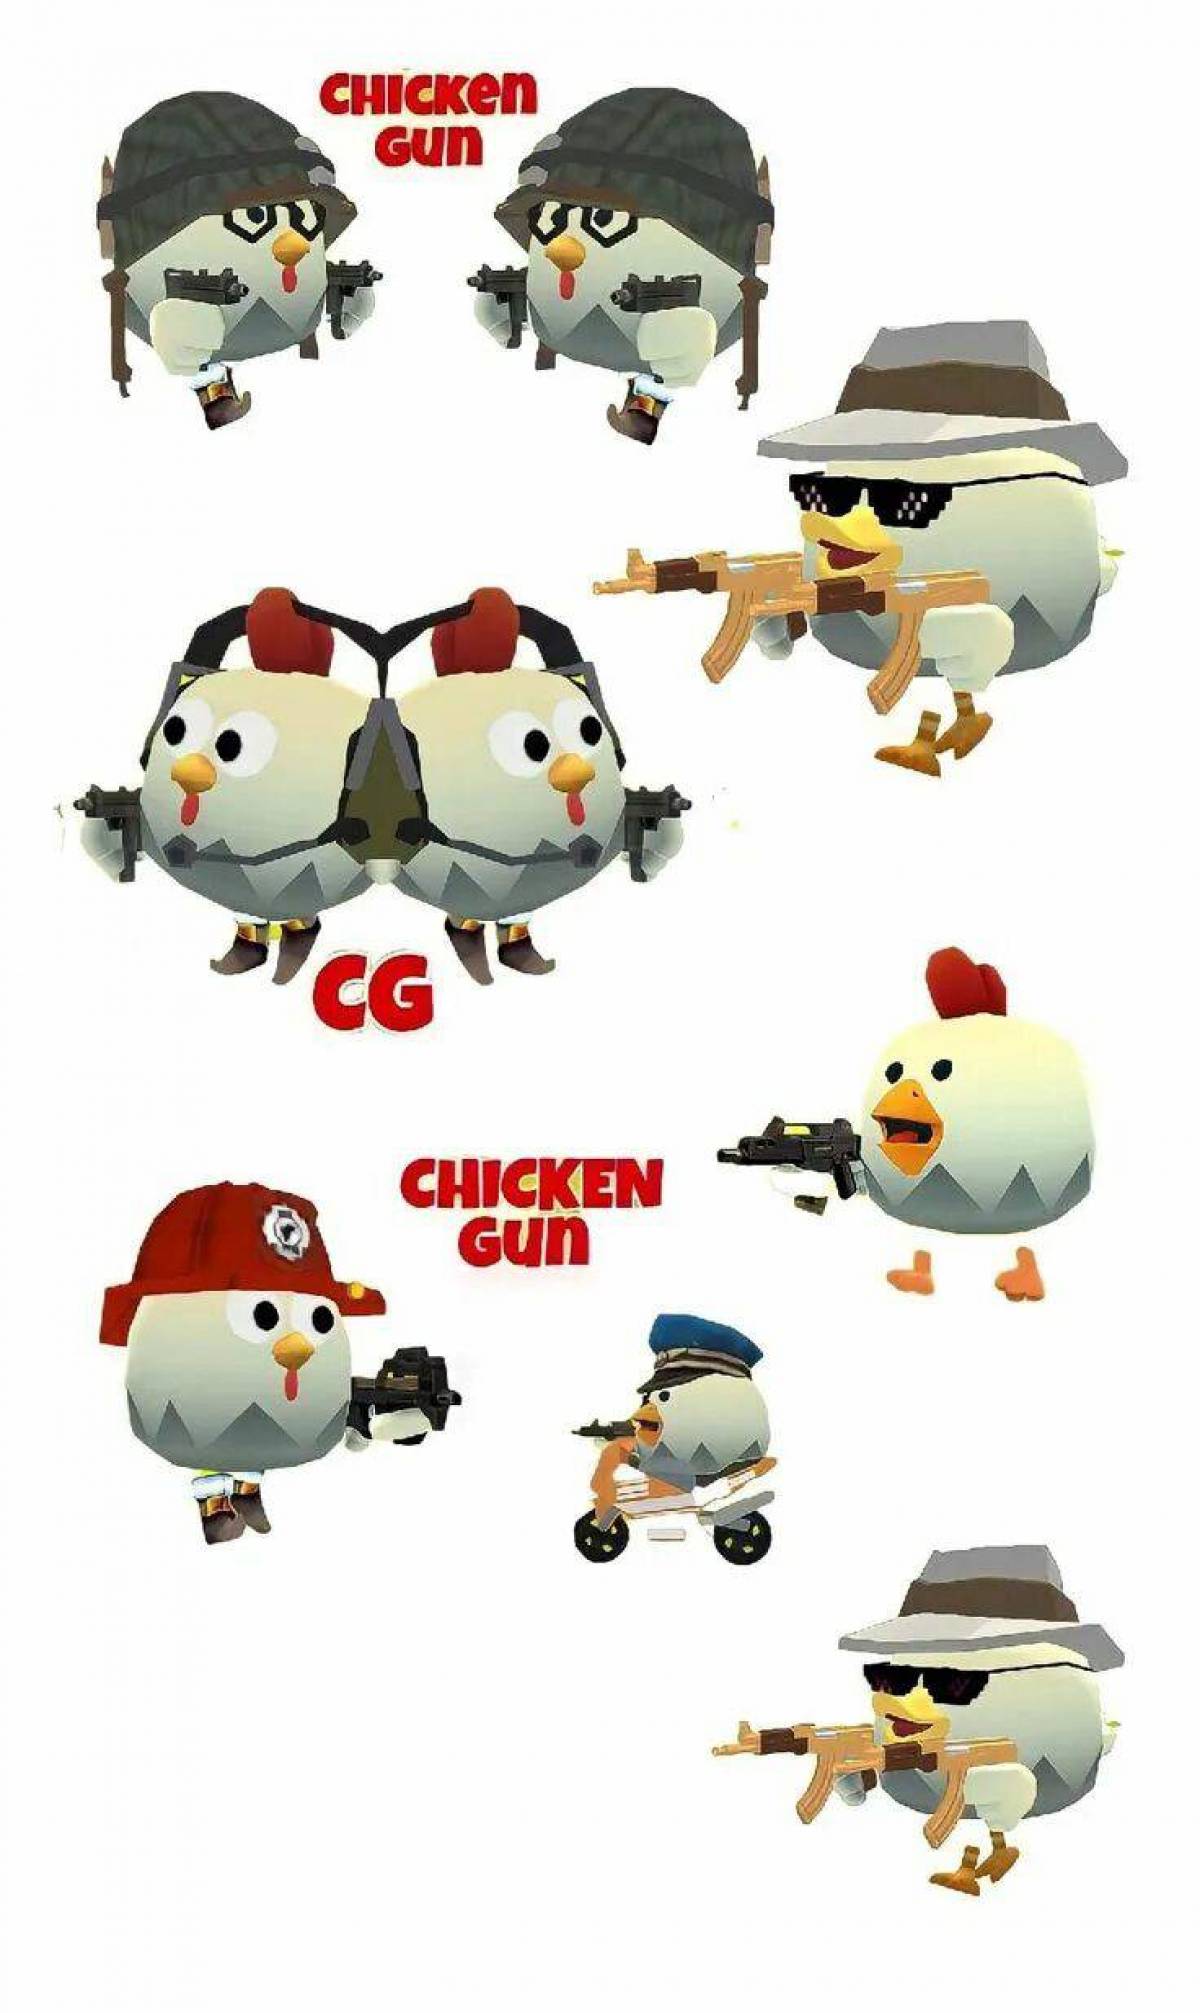 Chicken gun #35